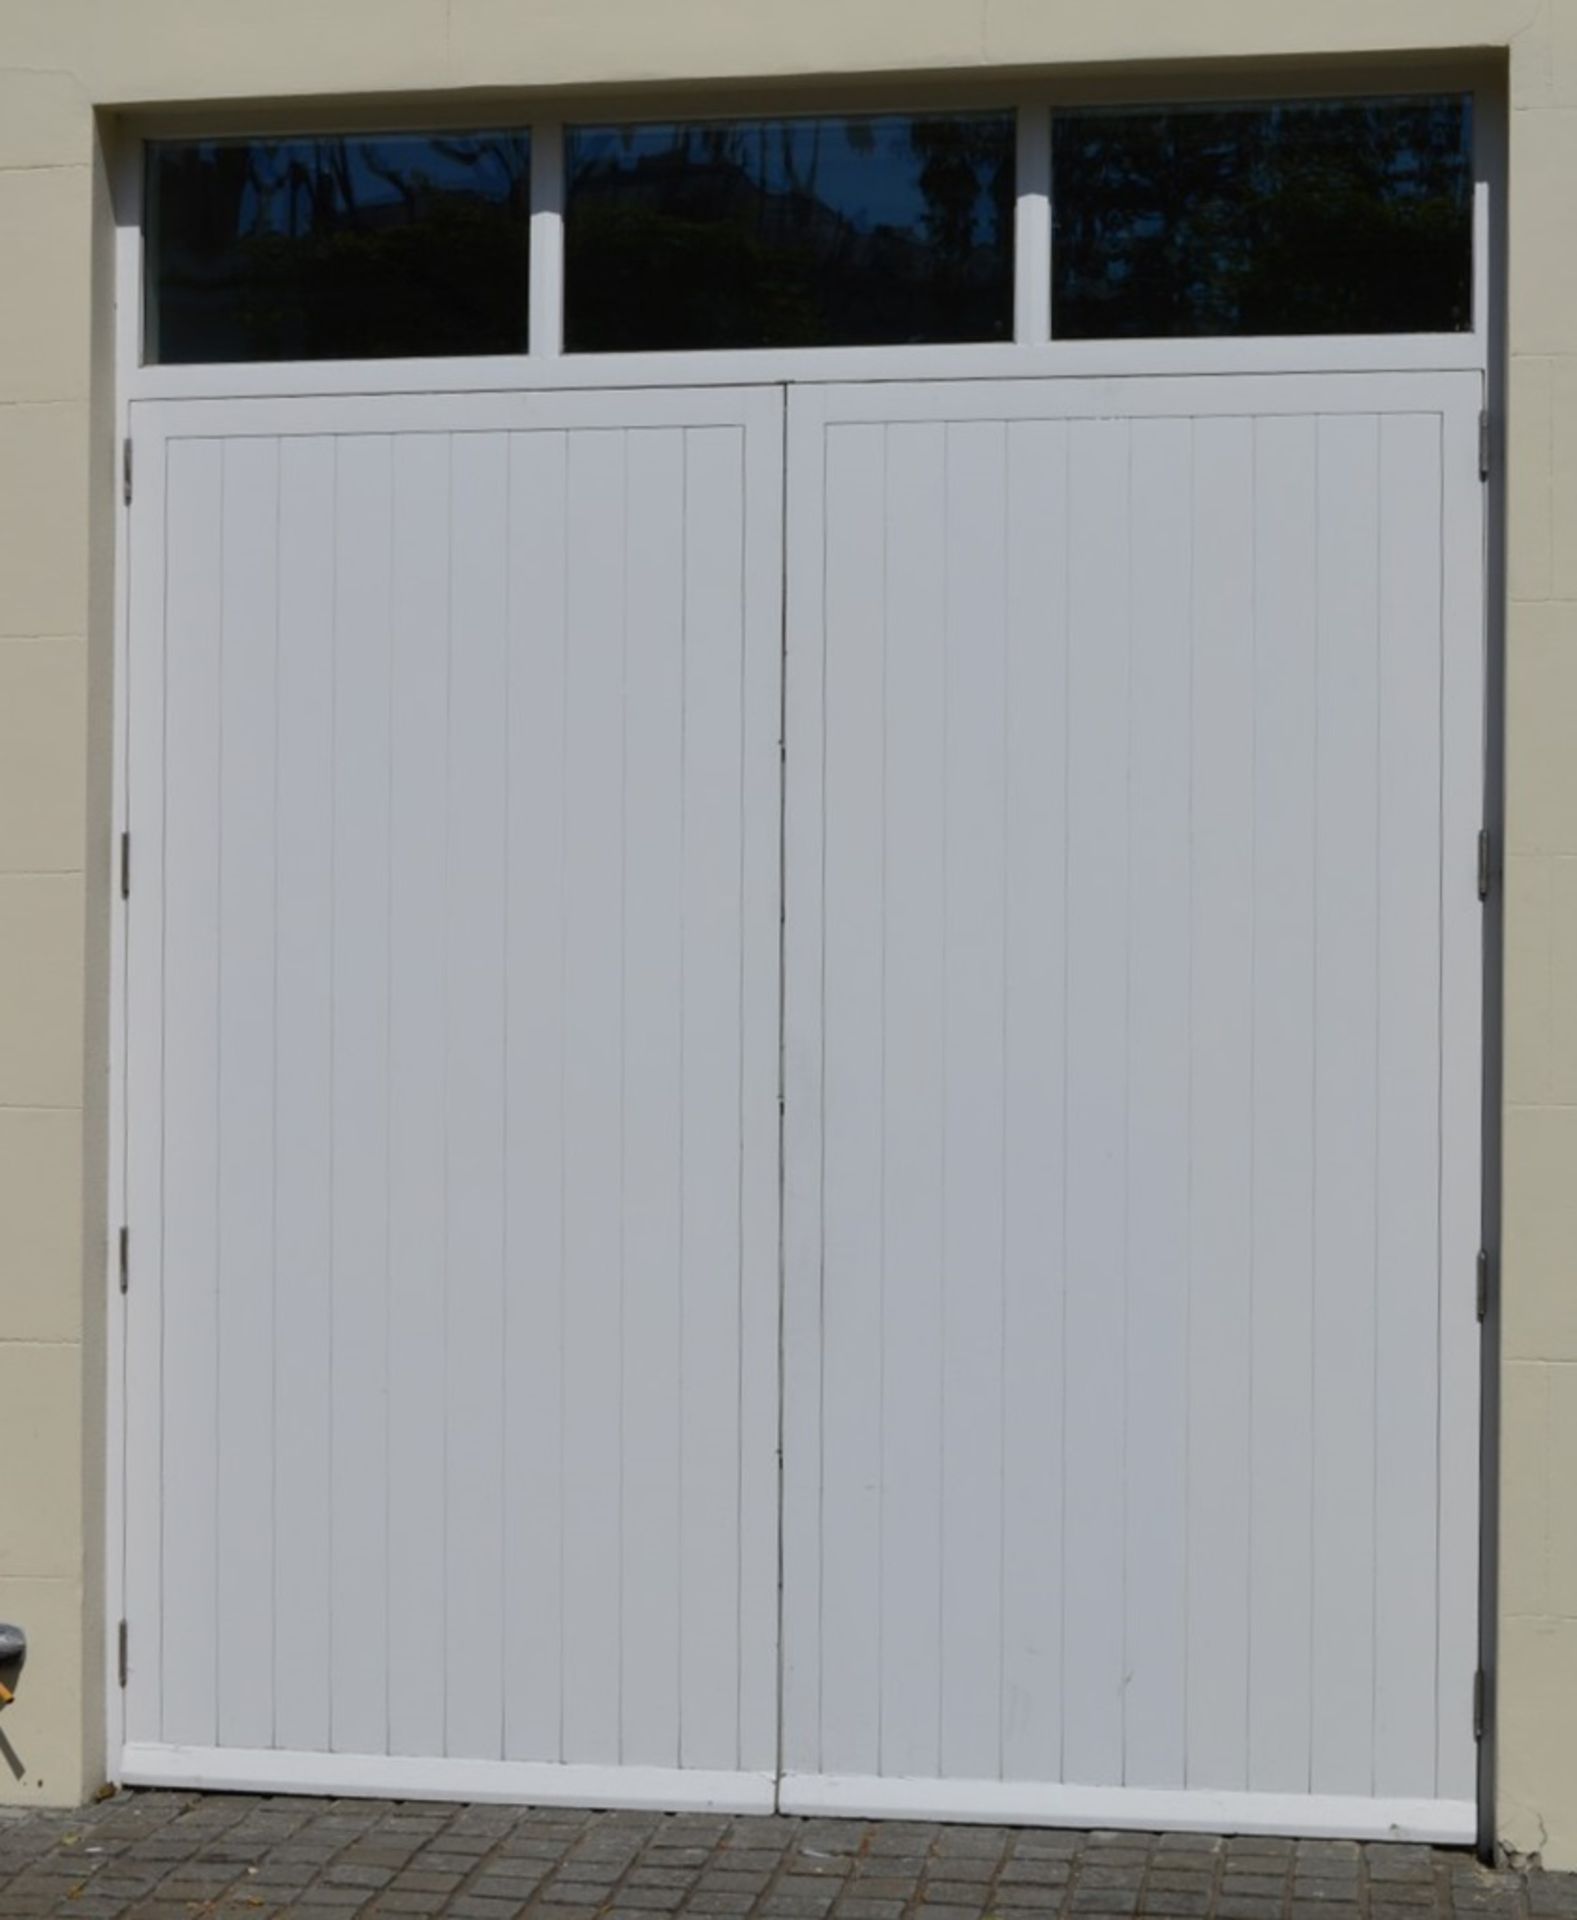 1 x Set of Wooden Garage Doors With Windowed Frame - Ref 117 - Includes Door Lock and Hinges -